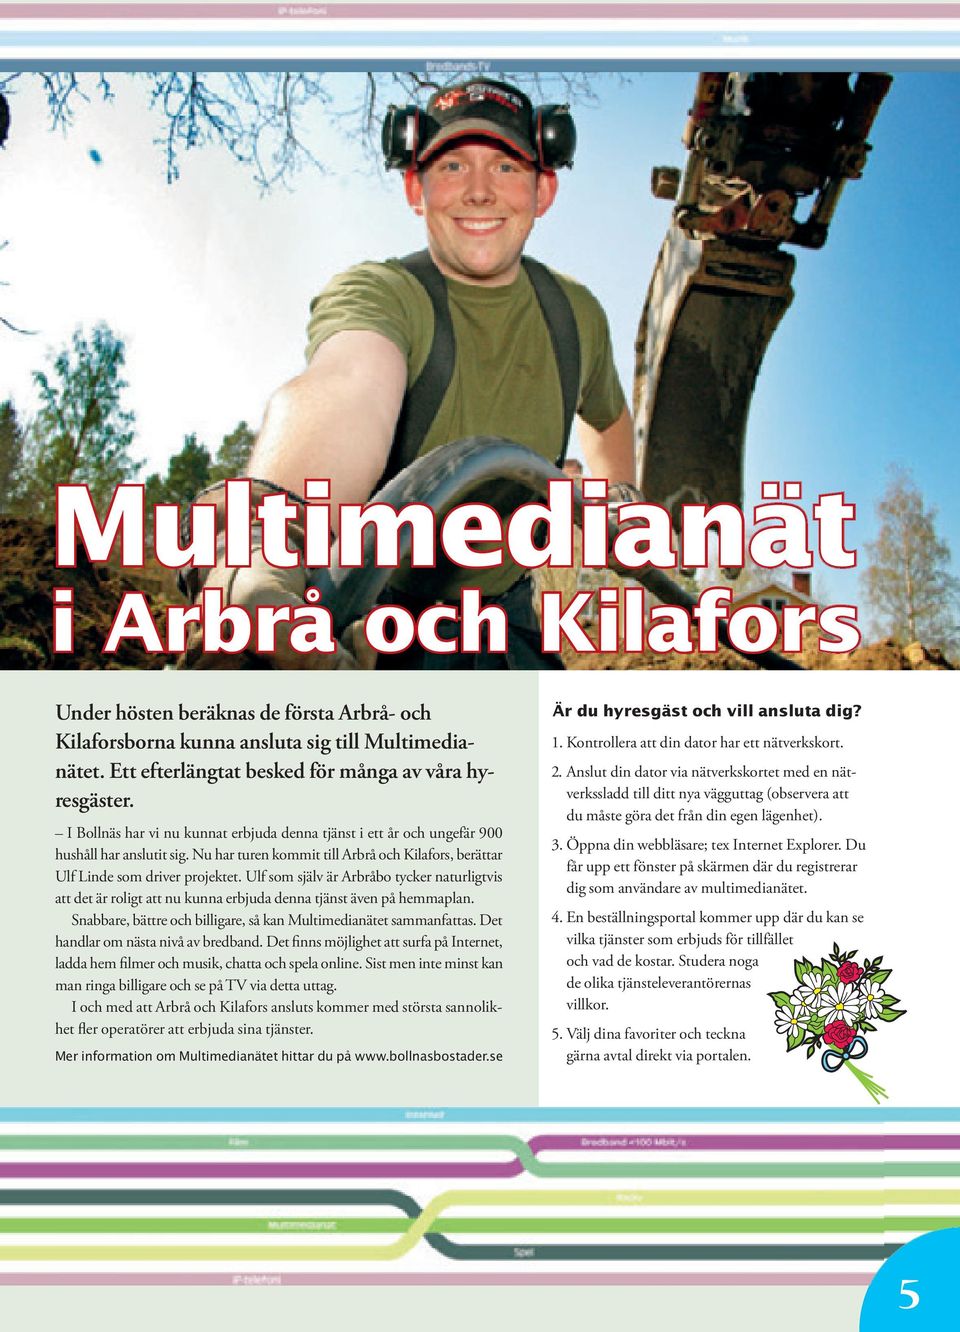 Ulf som själv är Arbråbo tycker naturligtvis att det är roligt att nu kunna erbjuda denna tjänst även på hemma plan. Snabbare, bättre och billigare, så kan Multimedianätet sammanfattas.